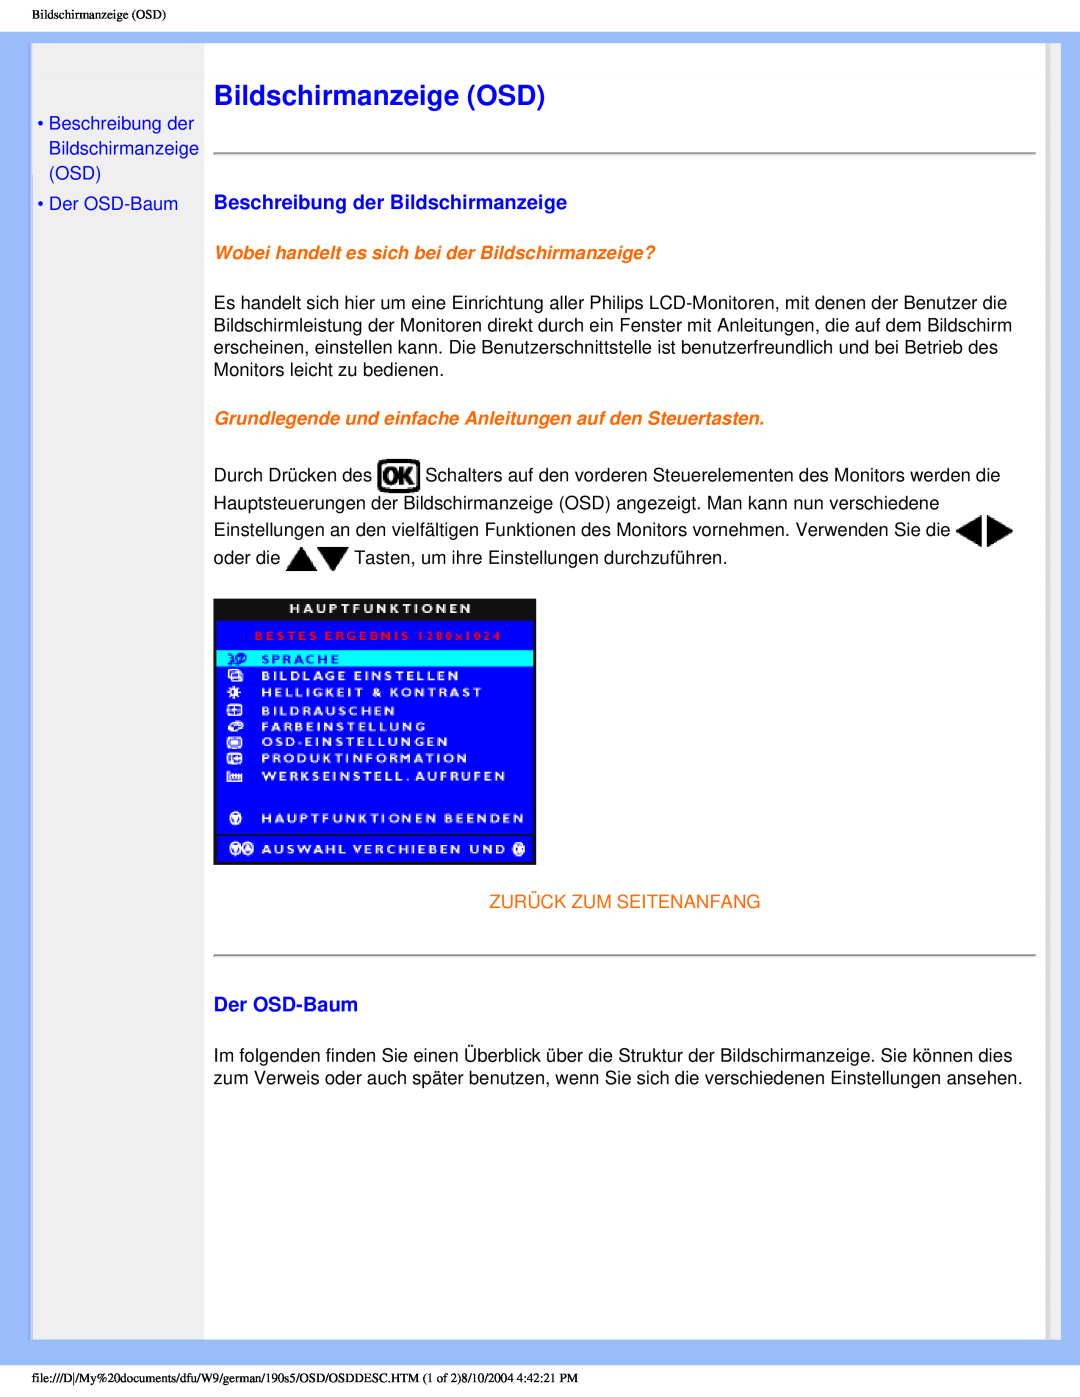 Philips 190S5 Bildschirmanzeige OSD, Beschreibung der Bildschirmanzeige, •Der OSD-Baum, Zurück Zum Seitenanfang 